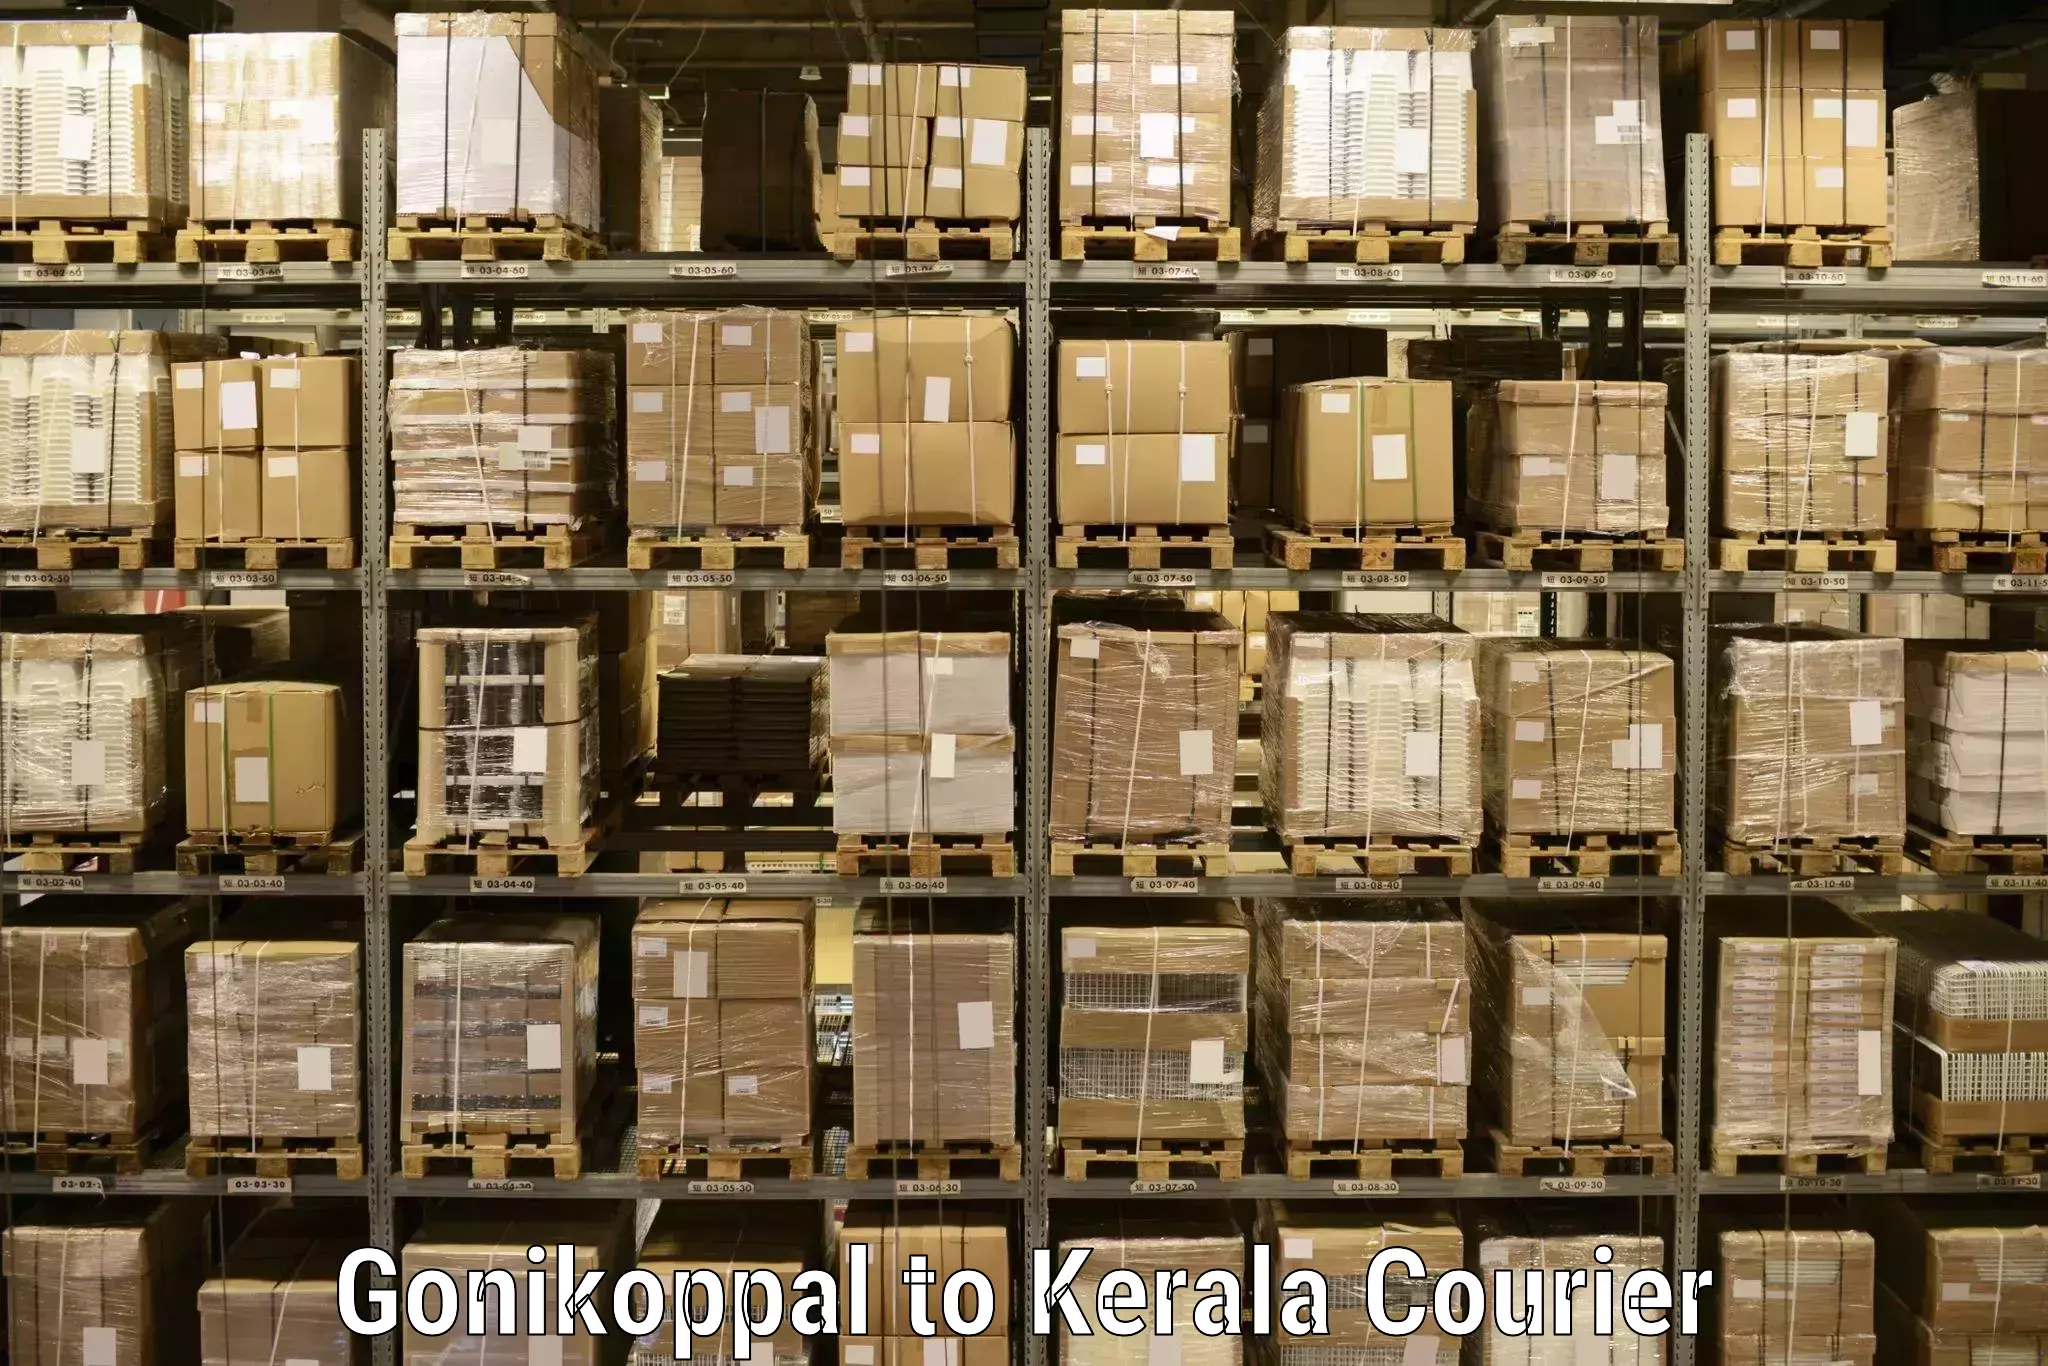 Express logistics providers Gonikoppal to Attingal